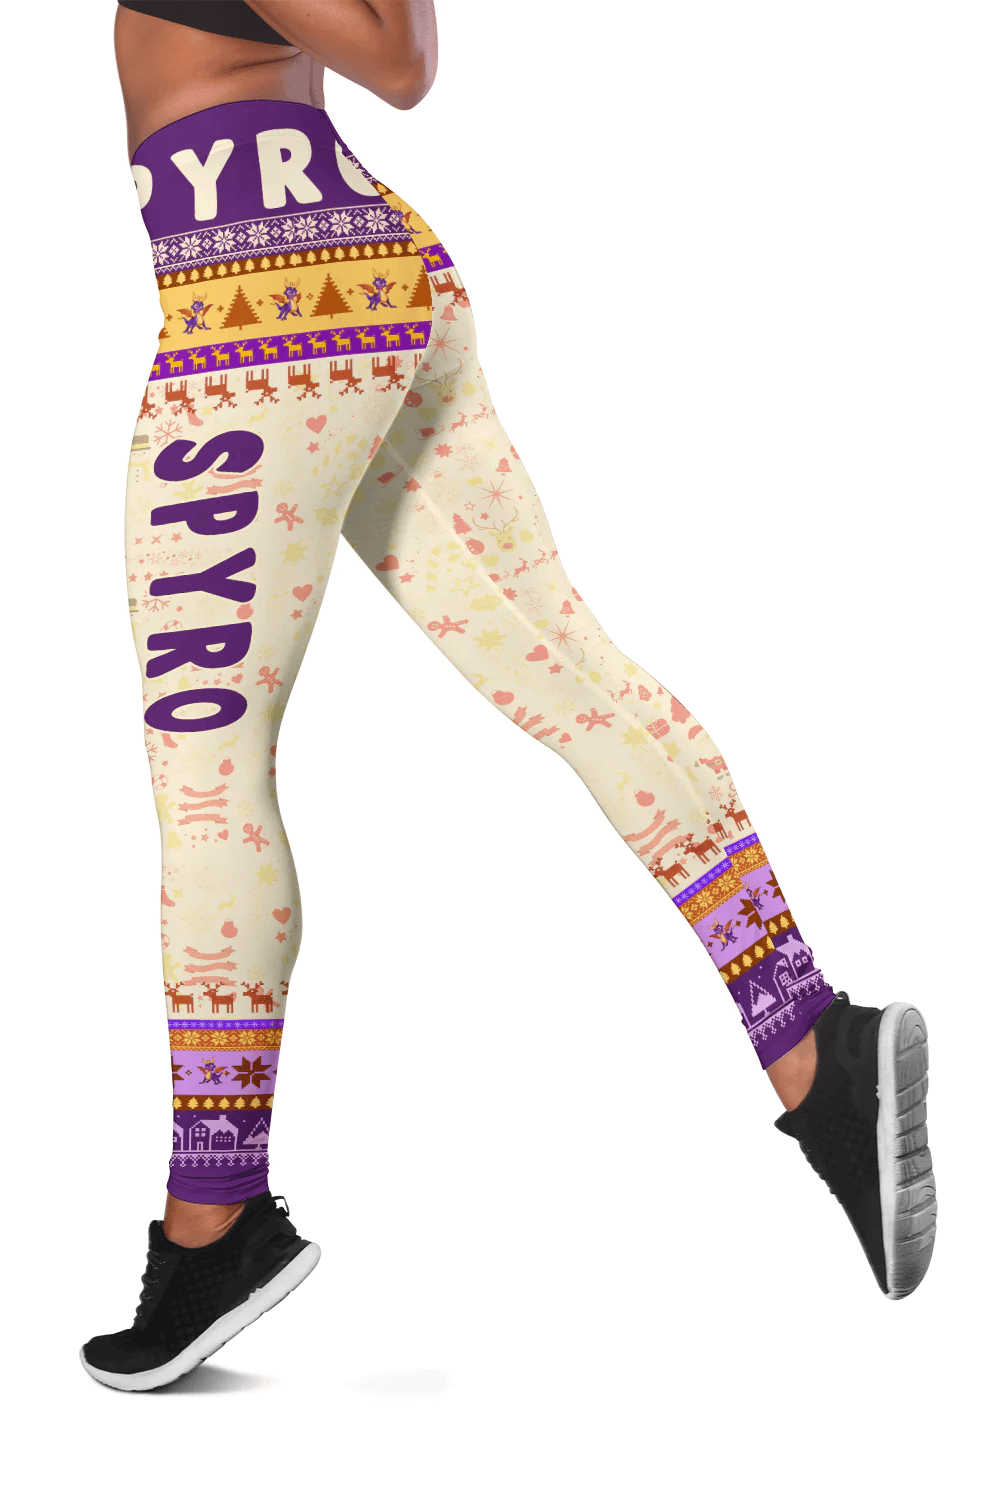 Spyro New Legging Style 02